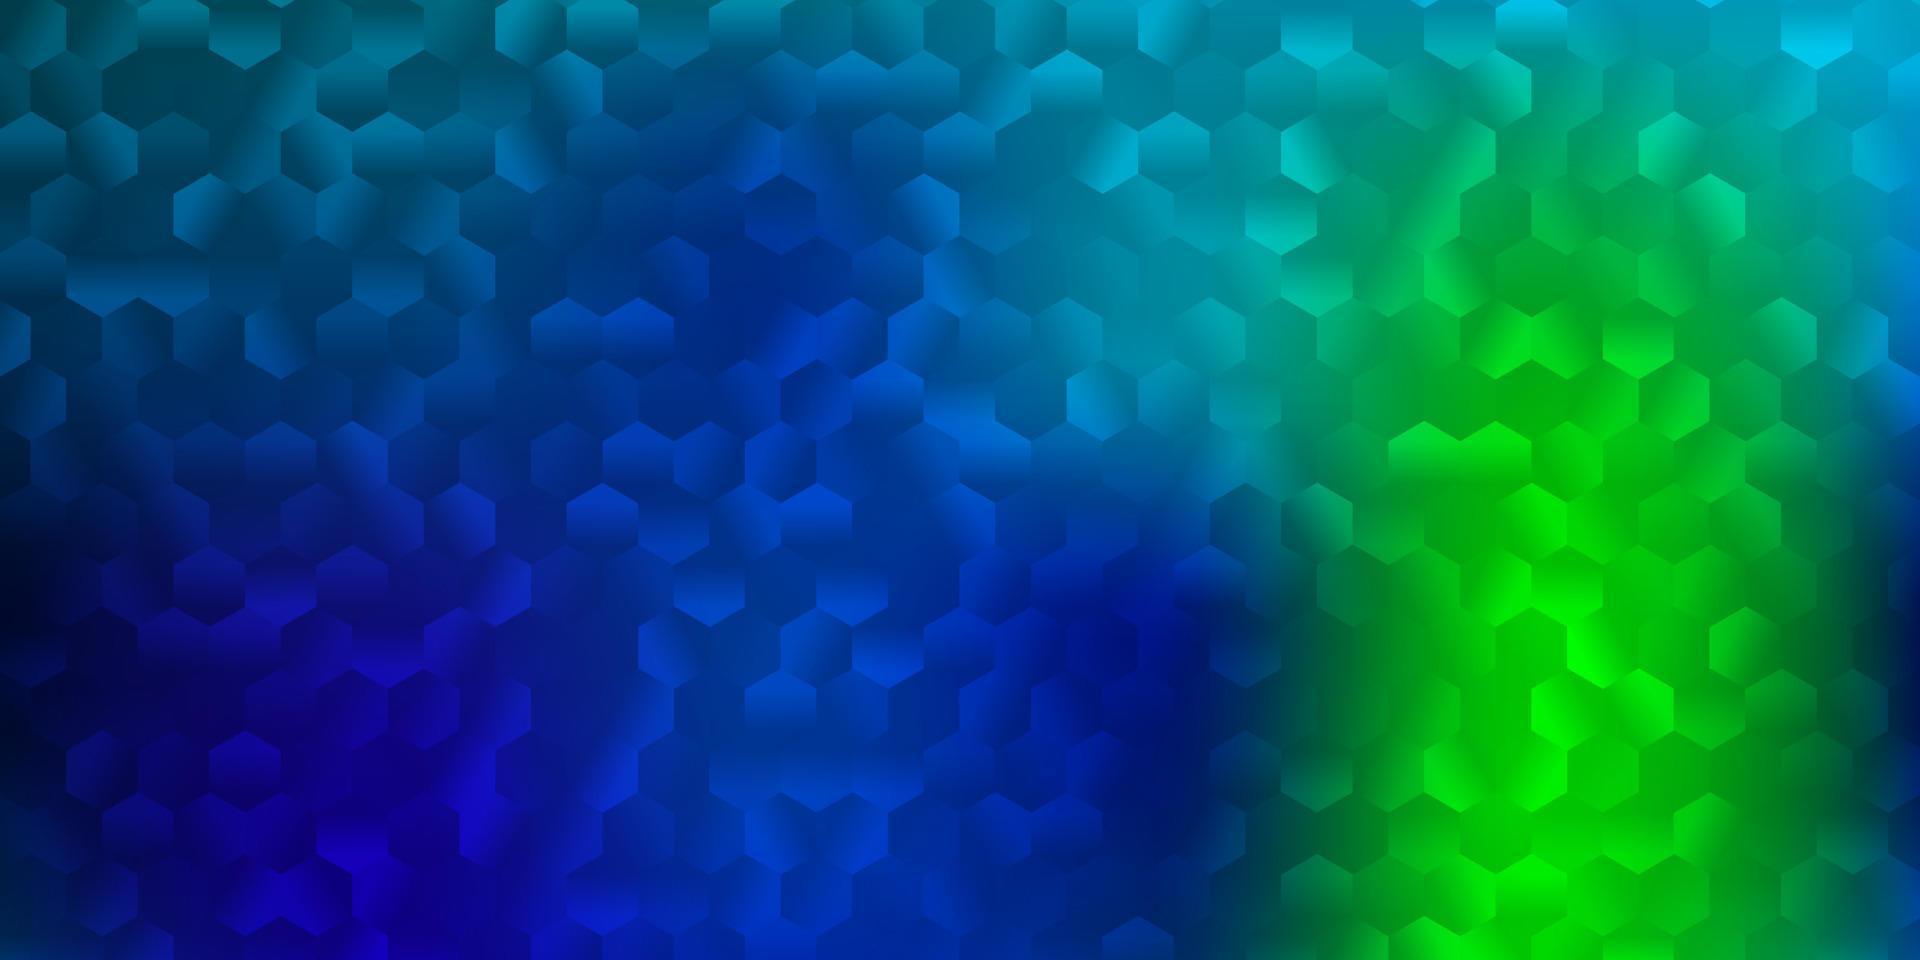 fond de vecteur bleu clair et vert avec des formes hexagonales.